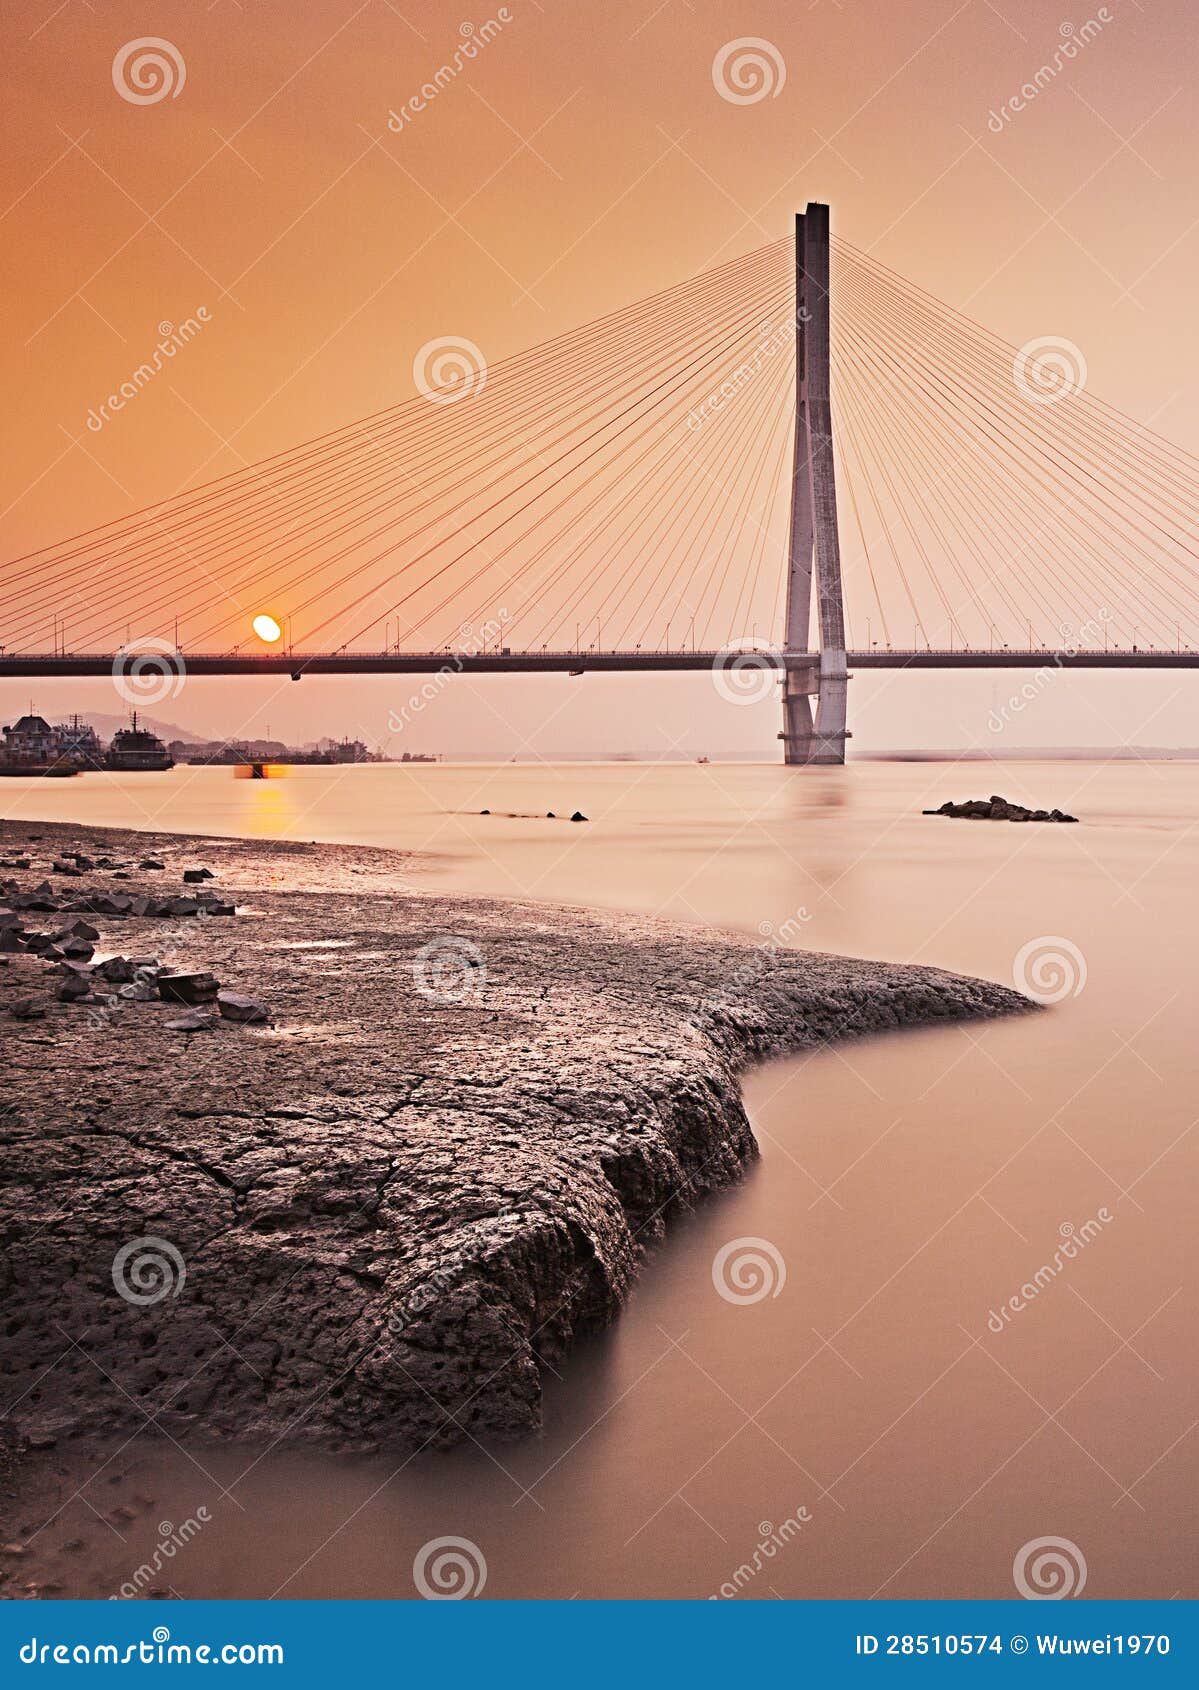 nanjing second yangtze river bridge